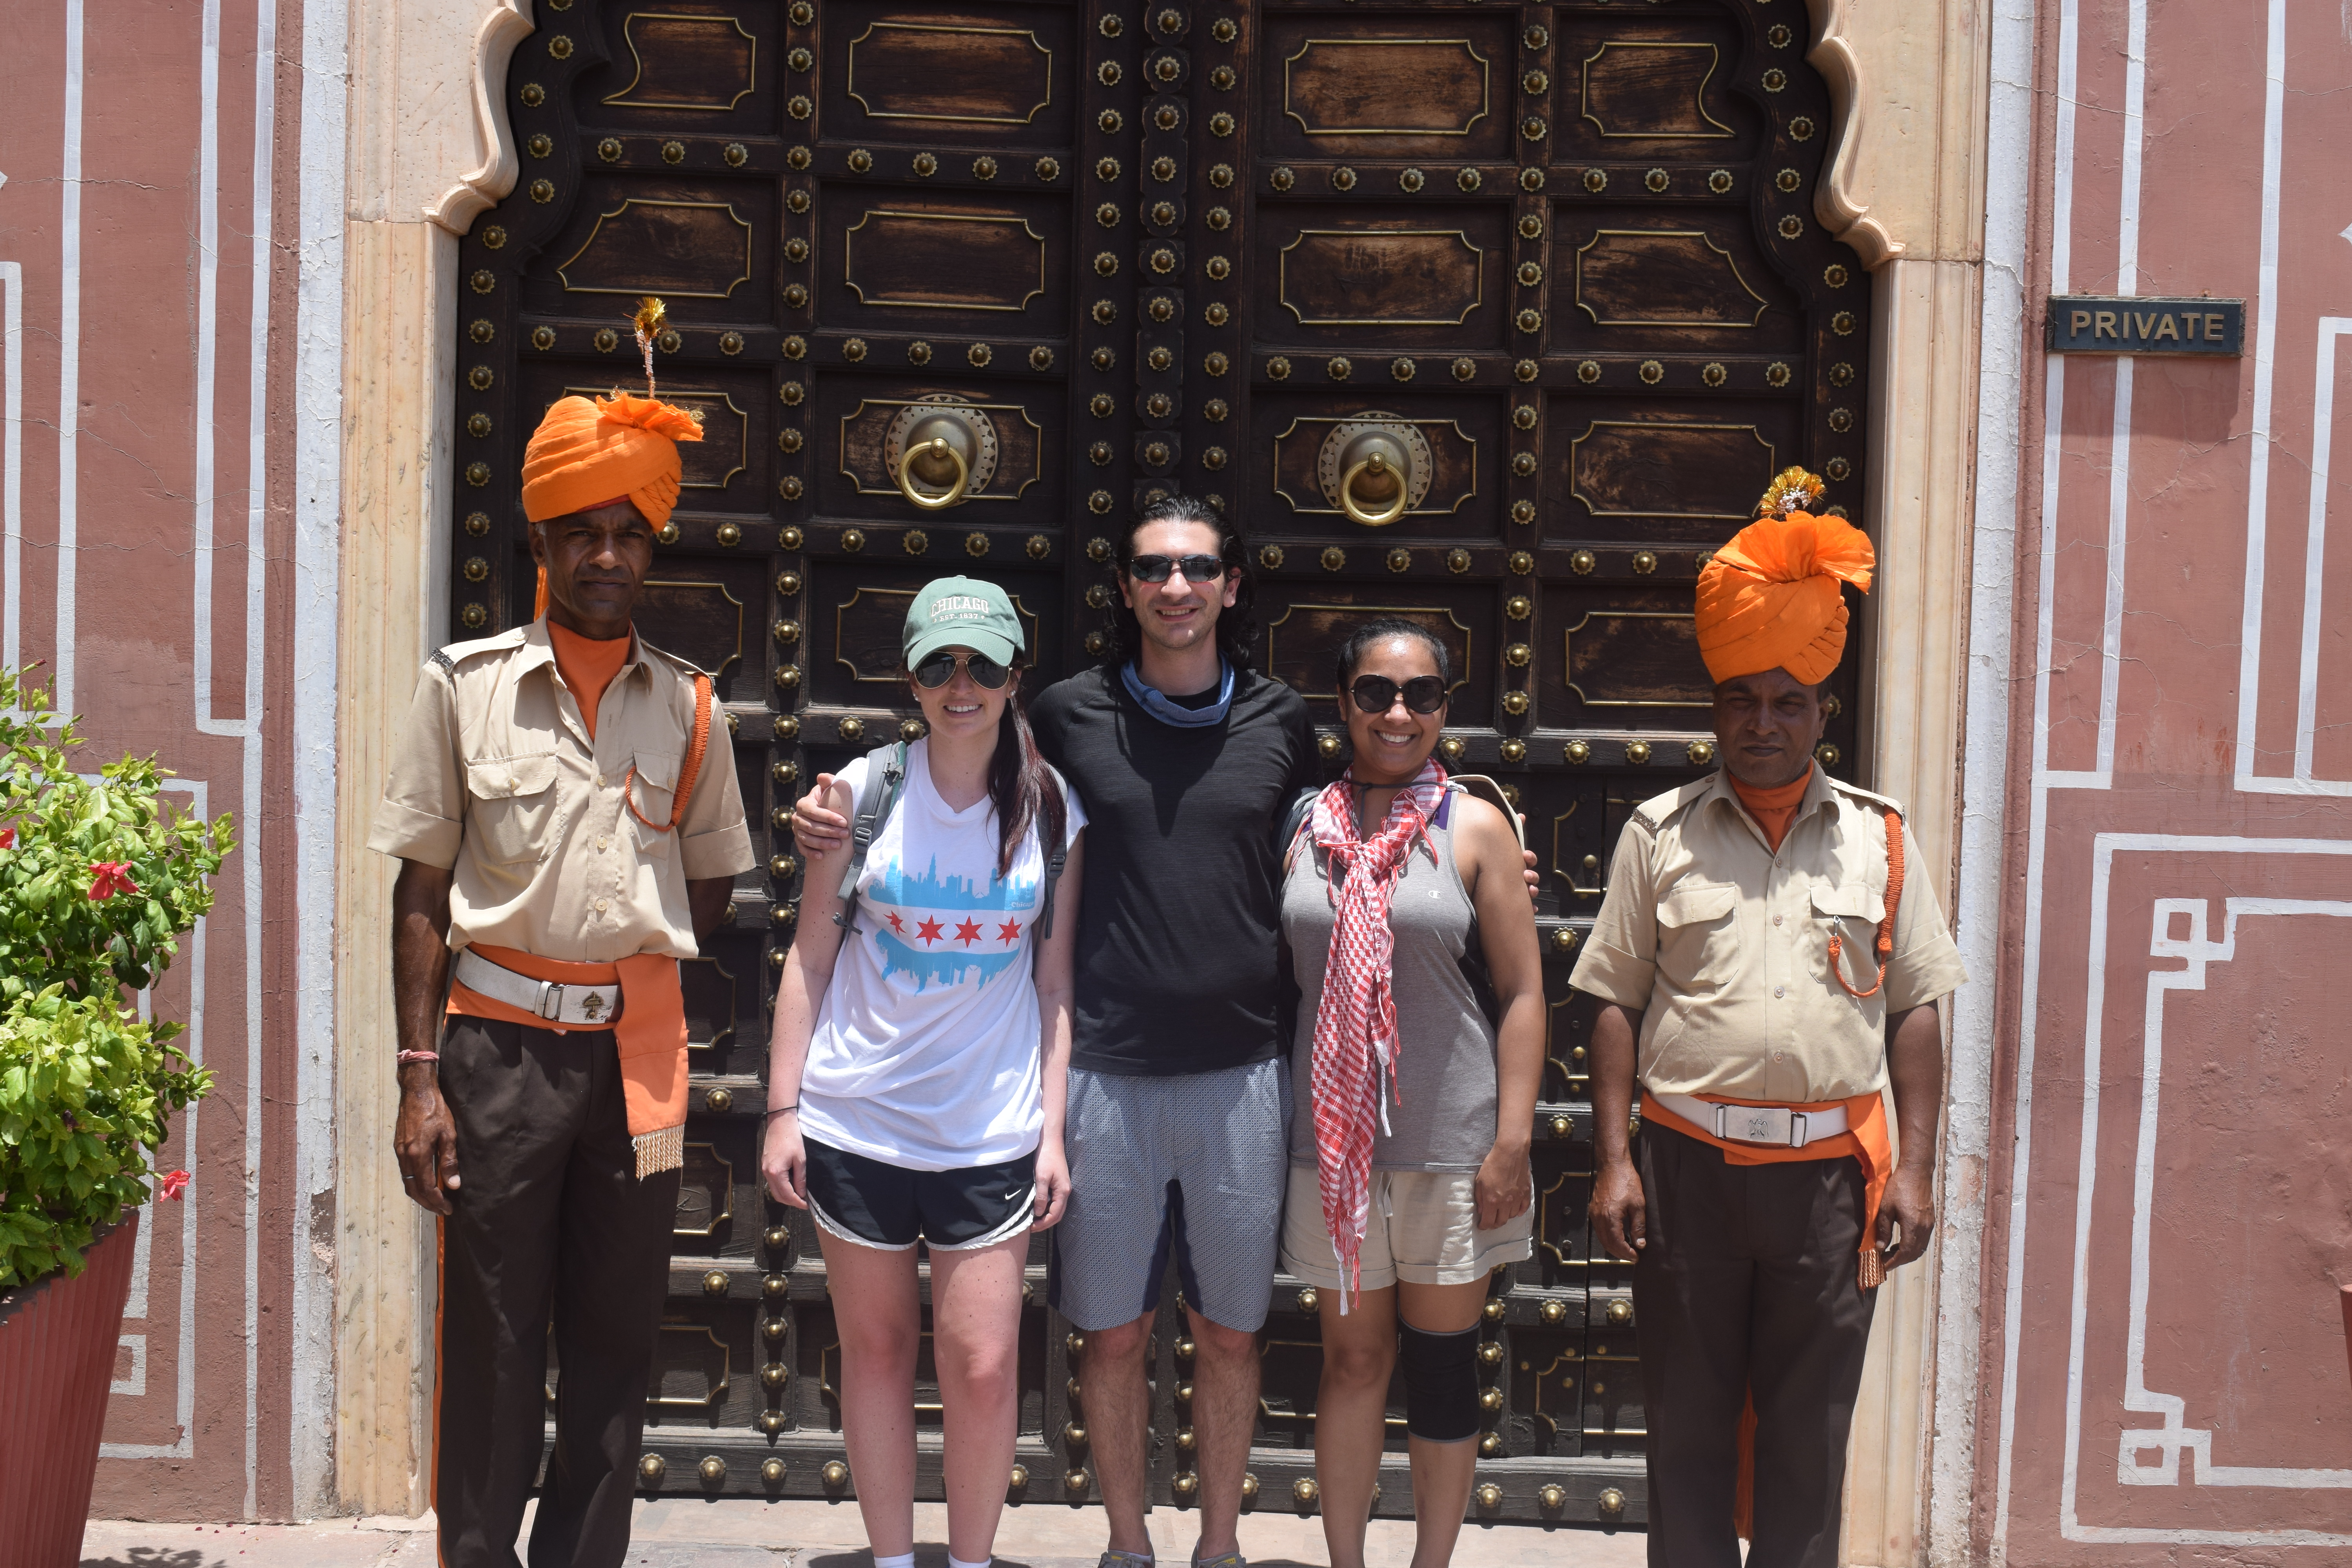 India Trip